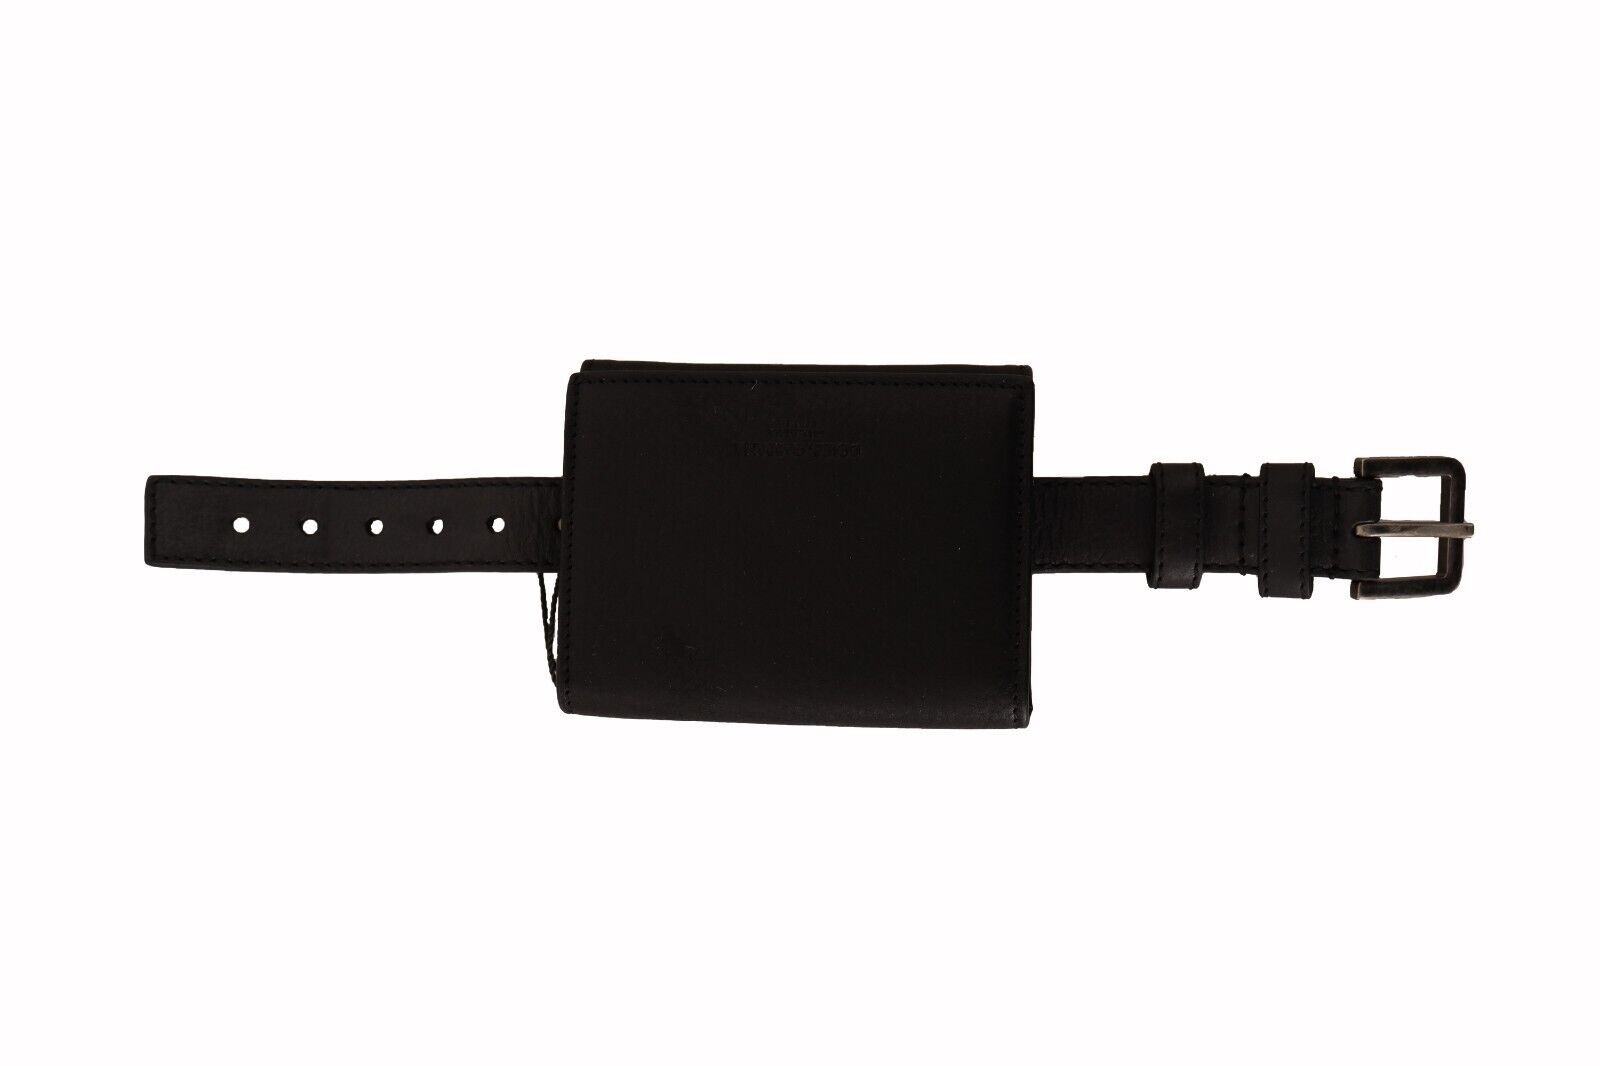 Elegant Black Leather Trifold Multi Kit